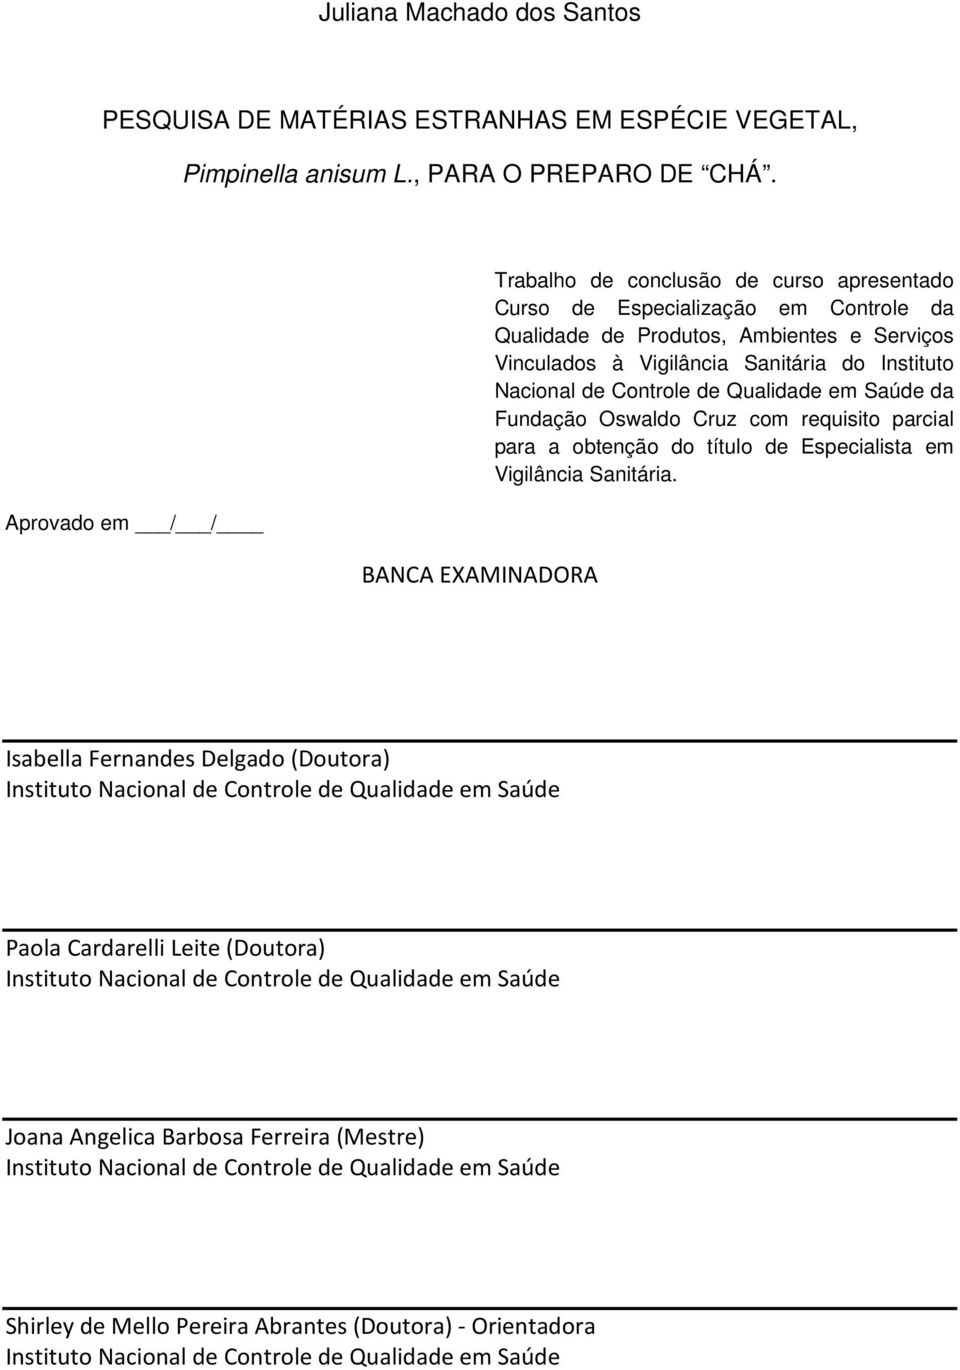 Instituto Nacional de Controle de Qualidade em Saúde da Fundação Oswaldo Cruz com requisito parcial para a obtenção do título de Especialista em Vigilância Sanitária.